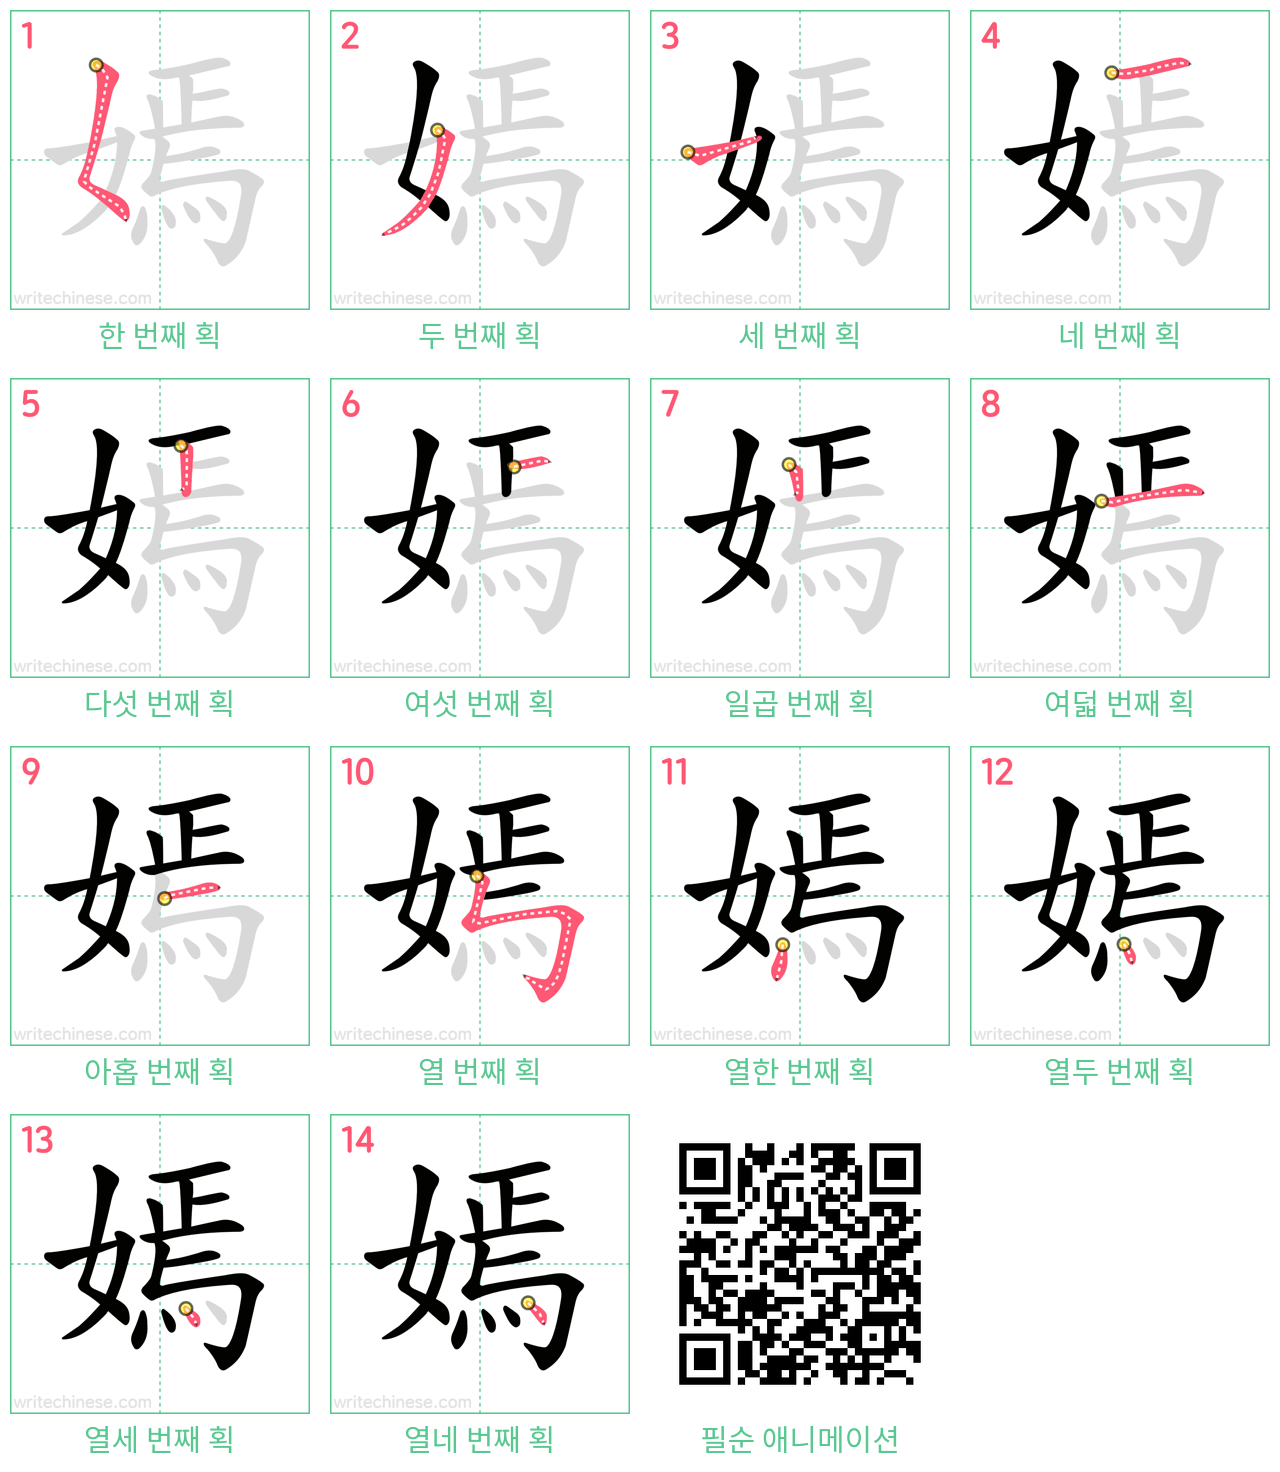 嫣 step-by-step stroke order diagrams